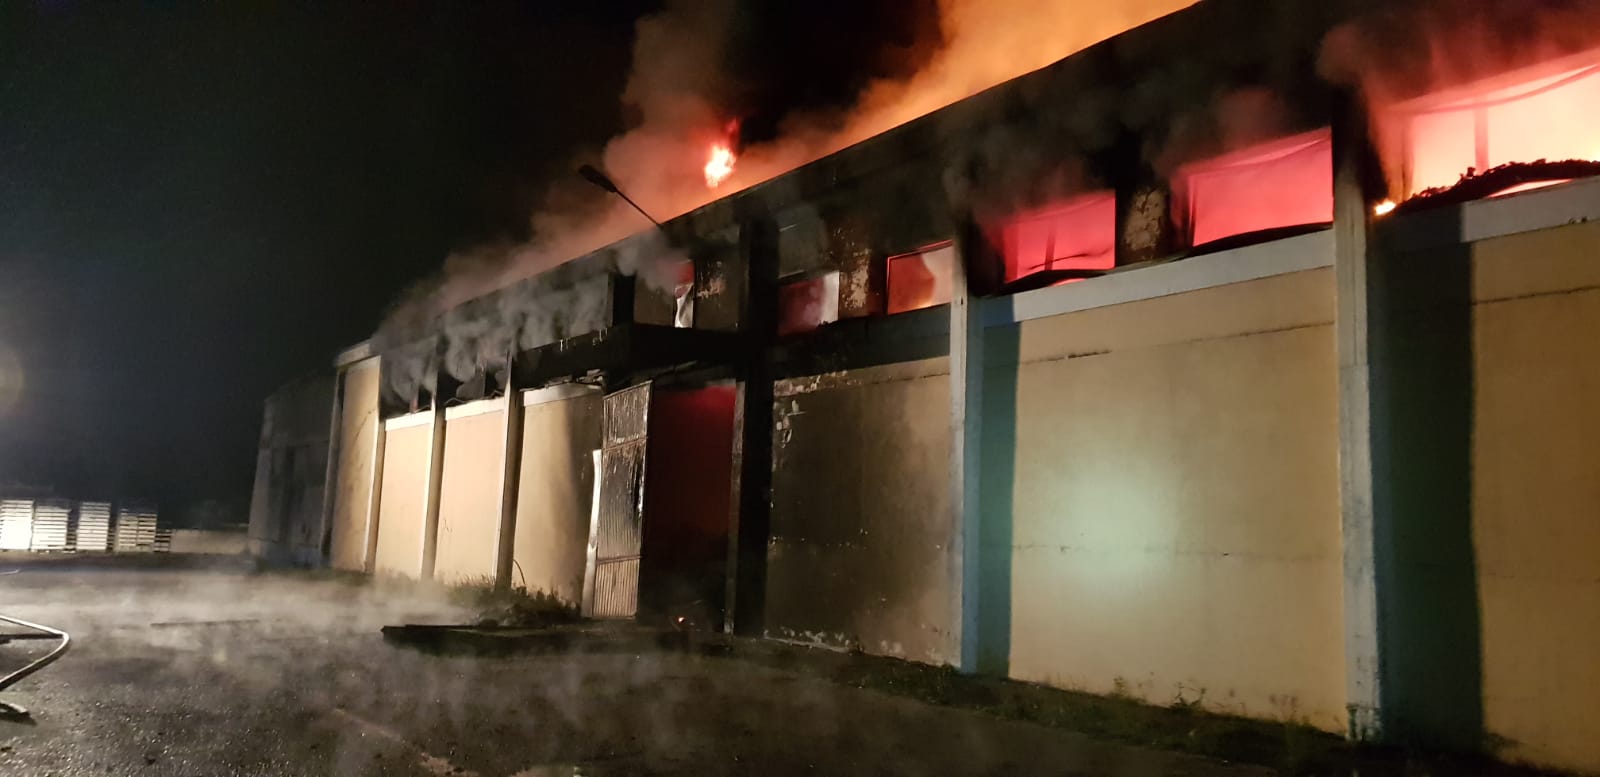 Violento incendio distrugge un capannone agricolo a Ortucchio